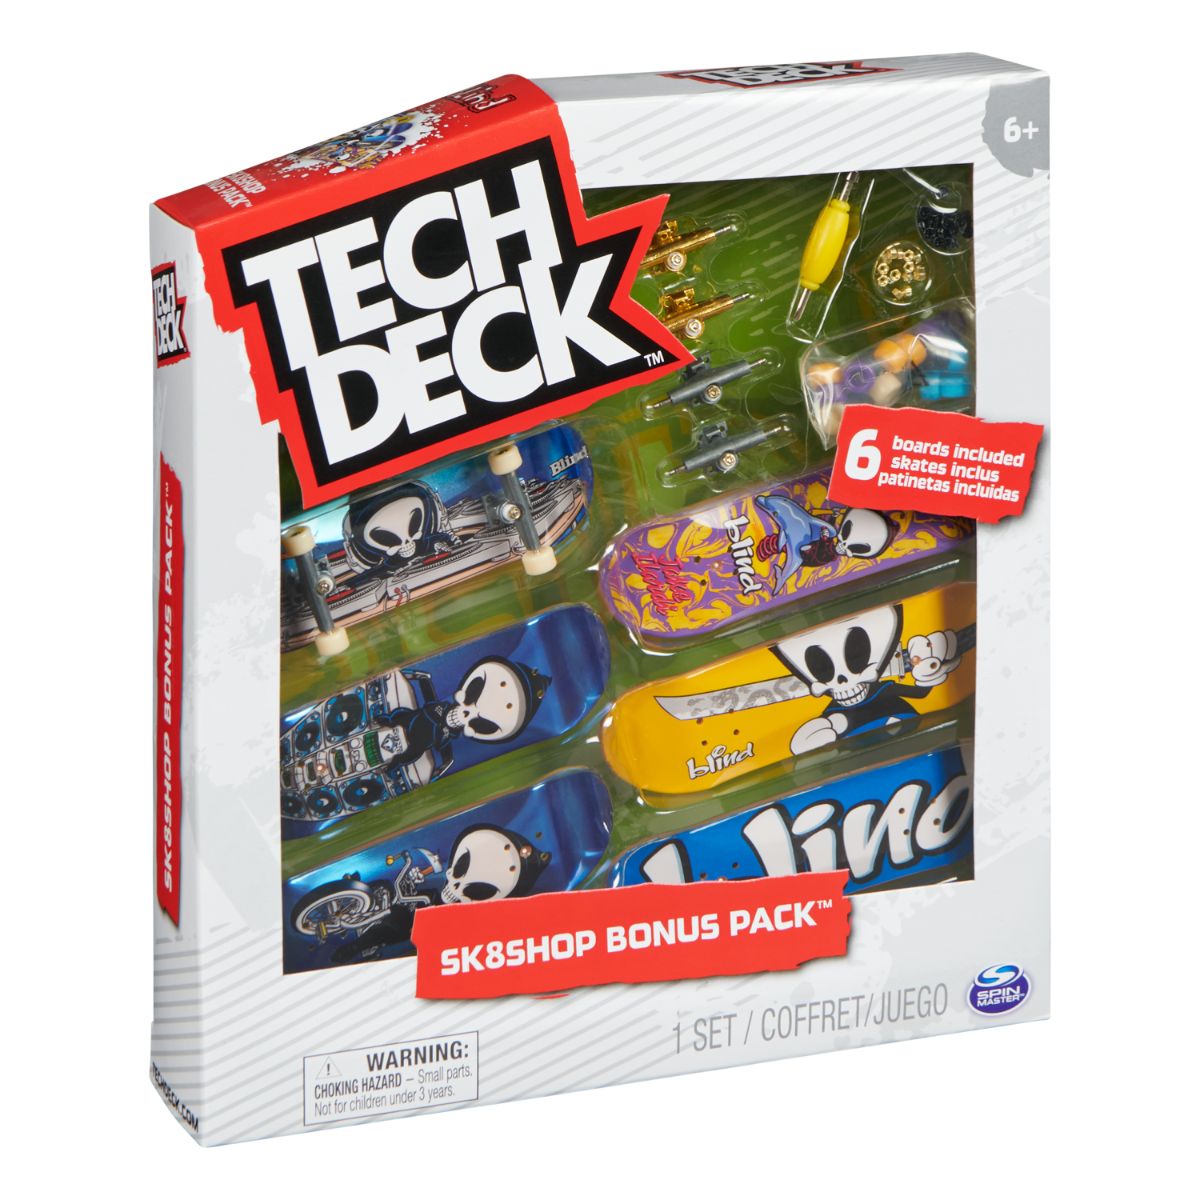 Set 6 mini placi skateboard, Tech Deck, Bonus Pack 20136703 20136703